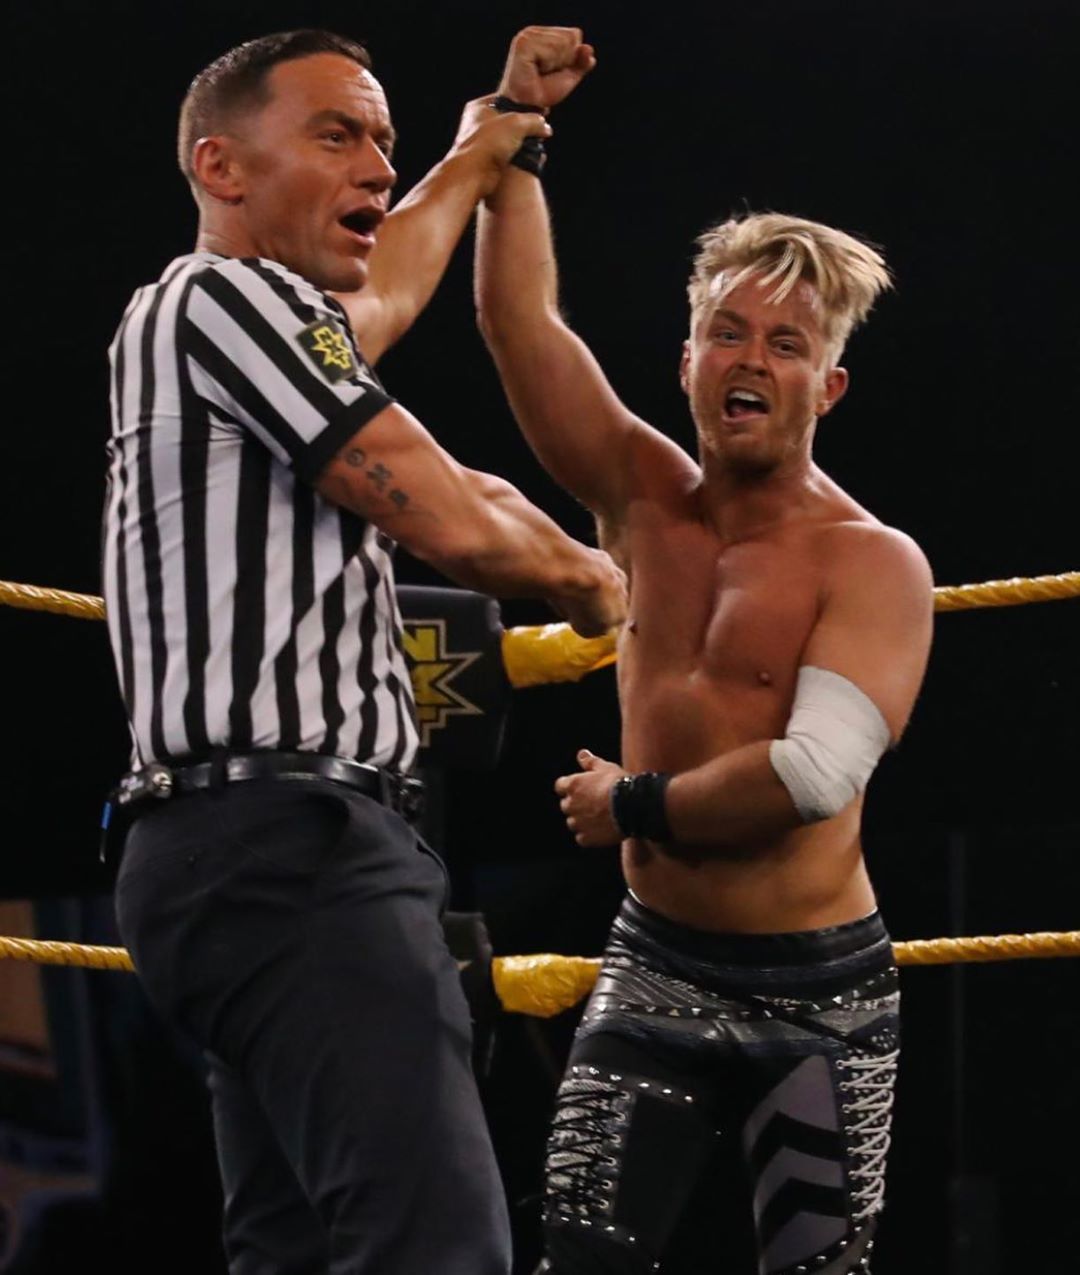 डार्क मेव्हरीक - हा WWE NXT मध्ये रेसलिंग करायचा. WWE च्या प्रवक्त्यांनी दिलेल्या माहितीनुसार, गेल्या काही काळात डार्क मेव्हरीकच्या फाईट्सला प्रेक्षकांचा चांगला प्रतिसाद मिळत नव्हता म्हणून त्याला WWE ने बाहेर काढलं. (फोटो सौजन्य - इन्स्टाग्राम)